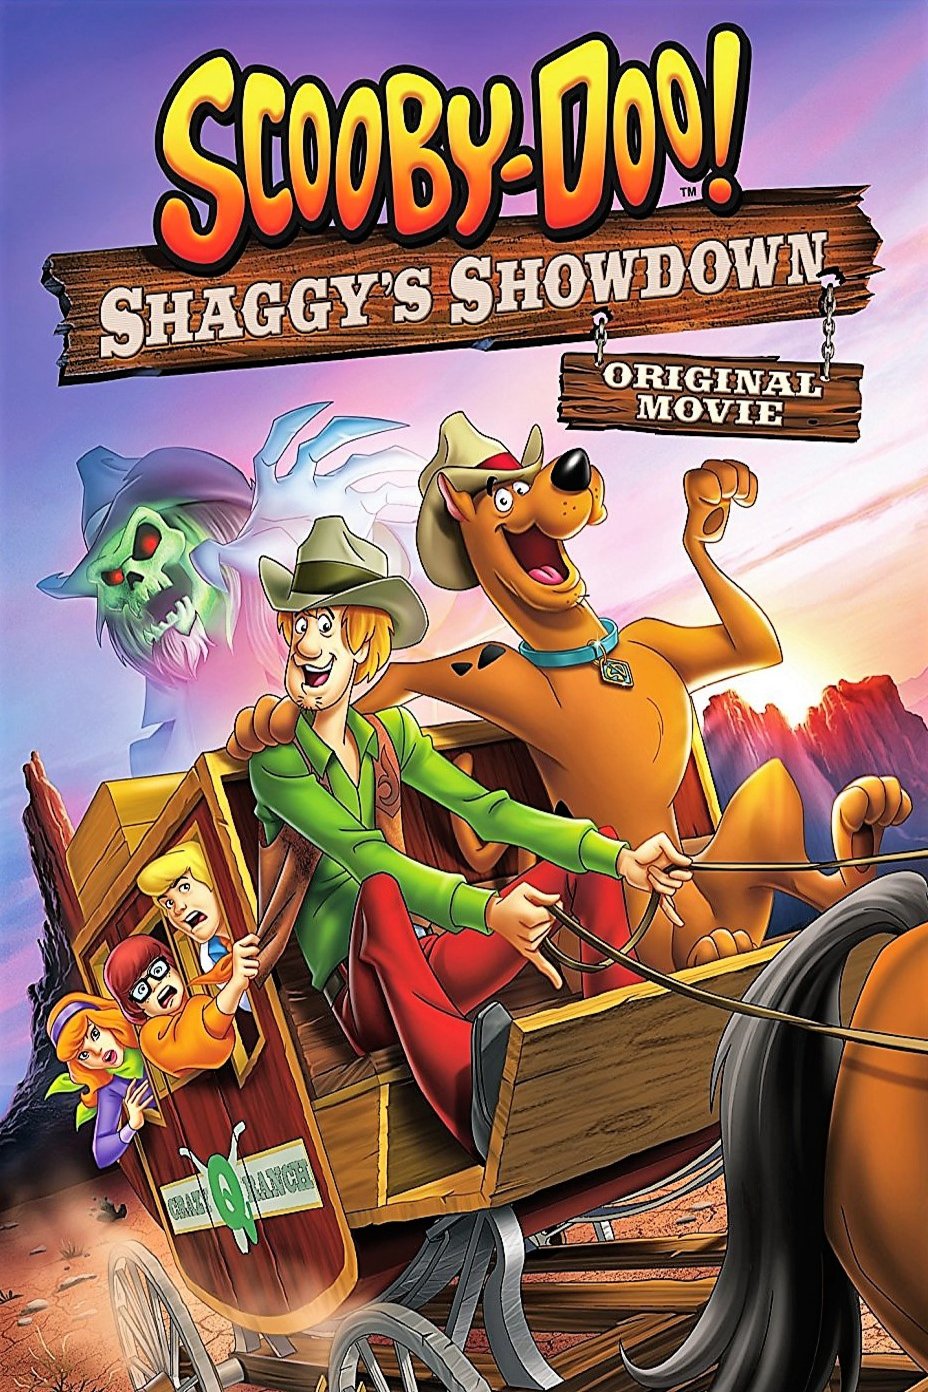 L'affiche du film Scooby-Doo! Shaggy's Showdown